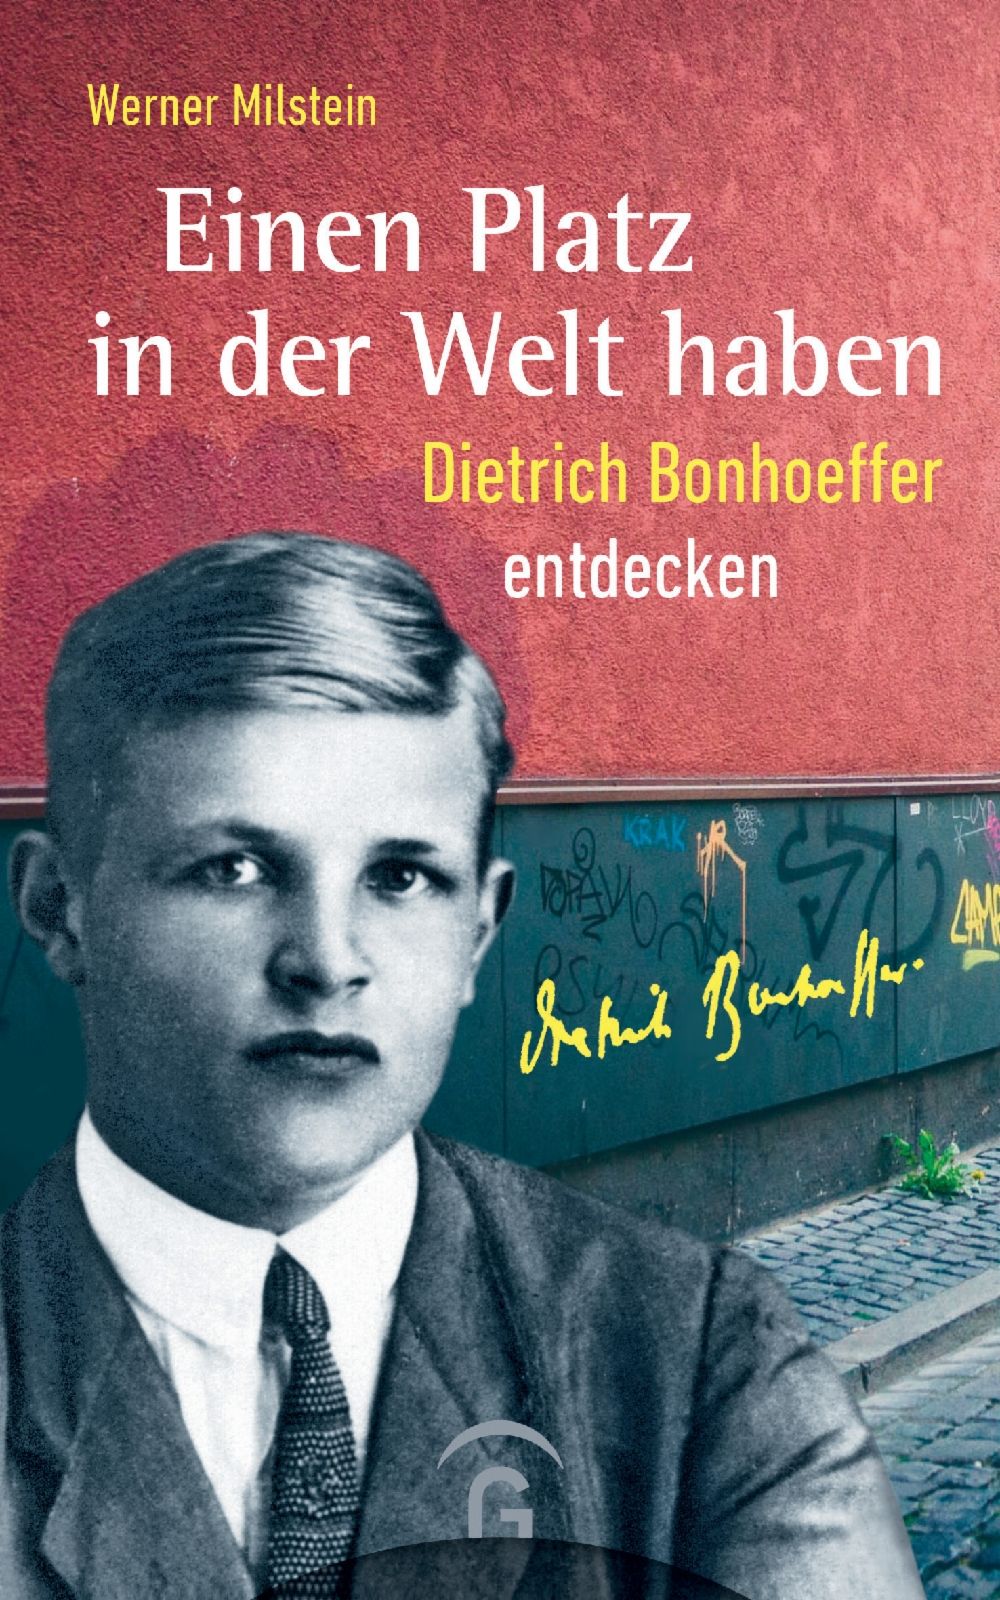 Einen Platz in der Welt haben|Dietrich Bonhoeffer entdecken